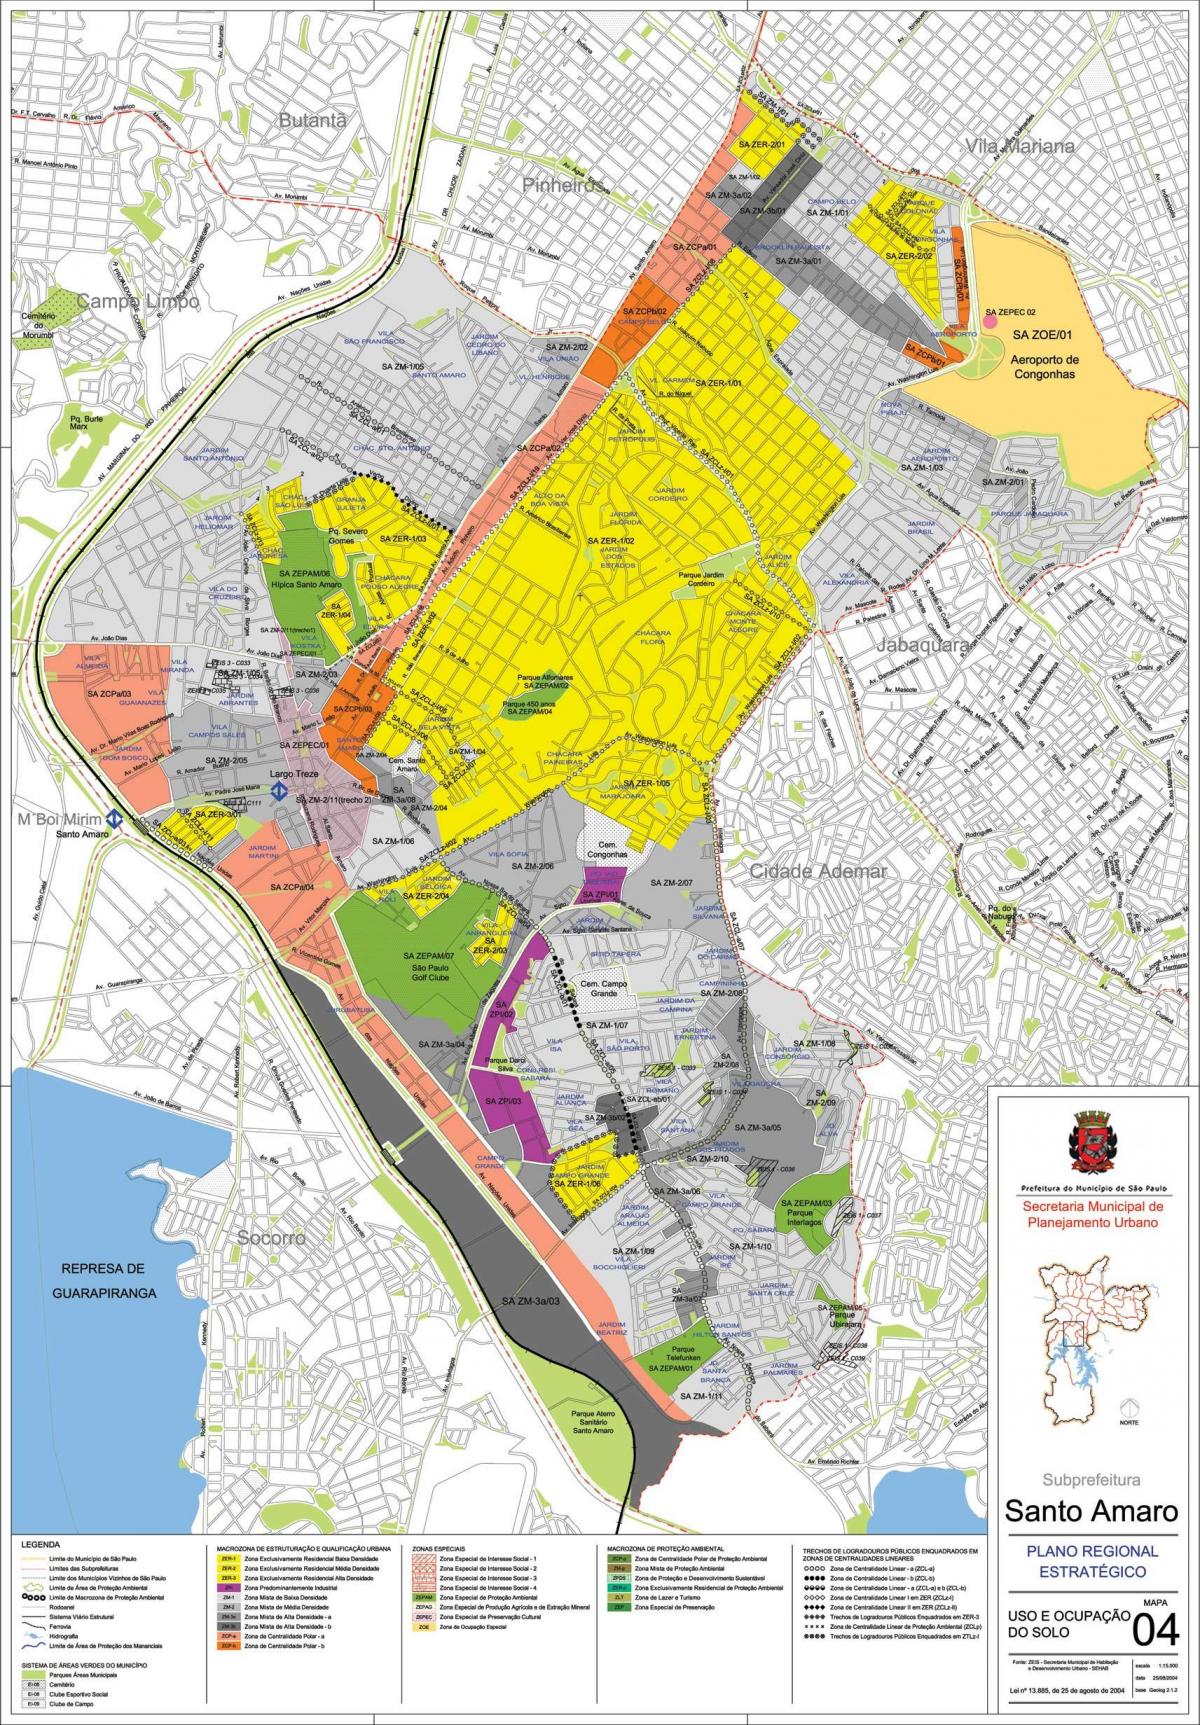 Peta dari Santo Amaro Sao Paulo - Pendudukan tanah